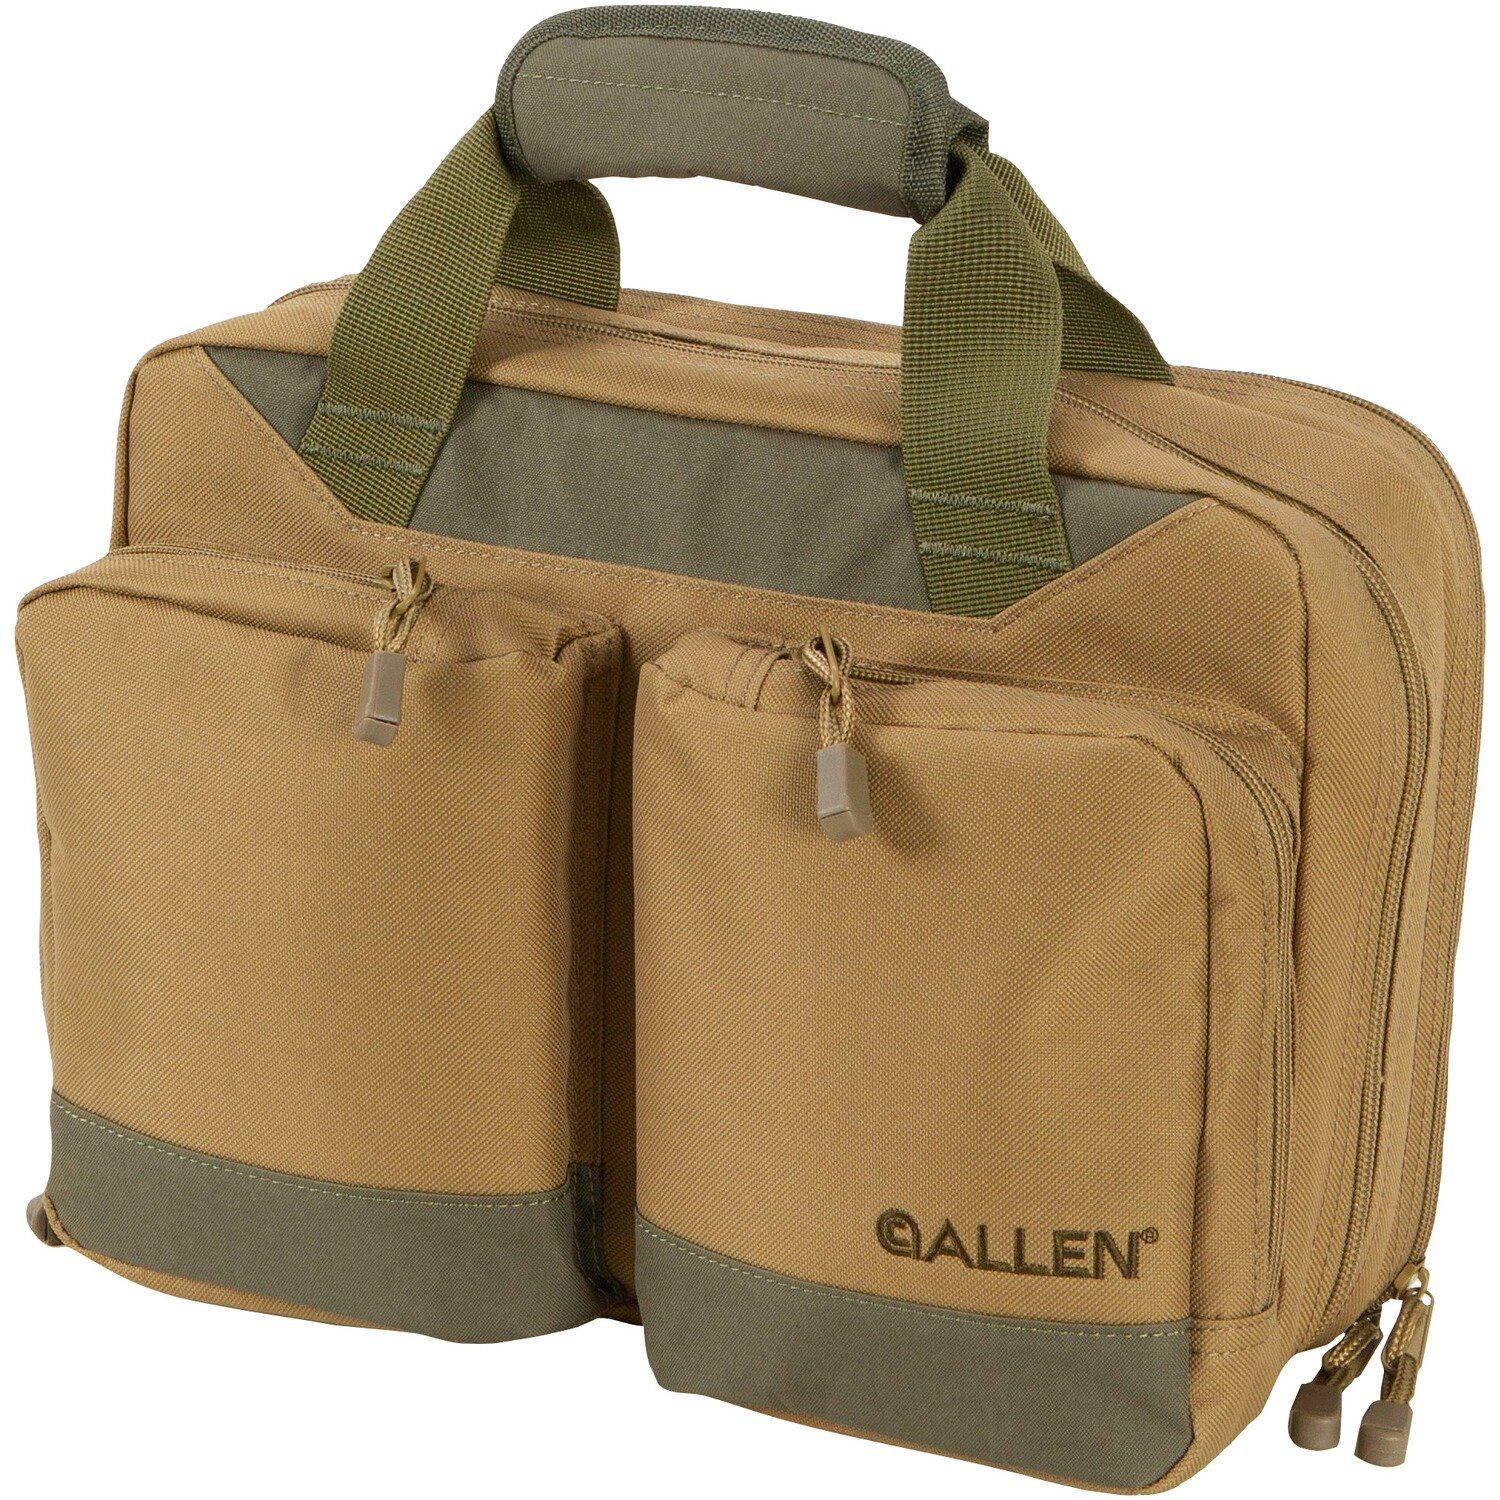 Double Attache Sporttasche Range Allen Bag